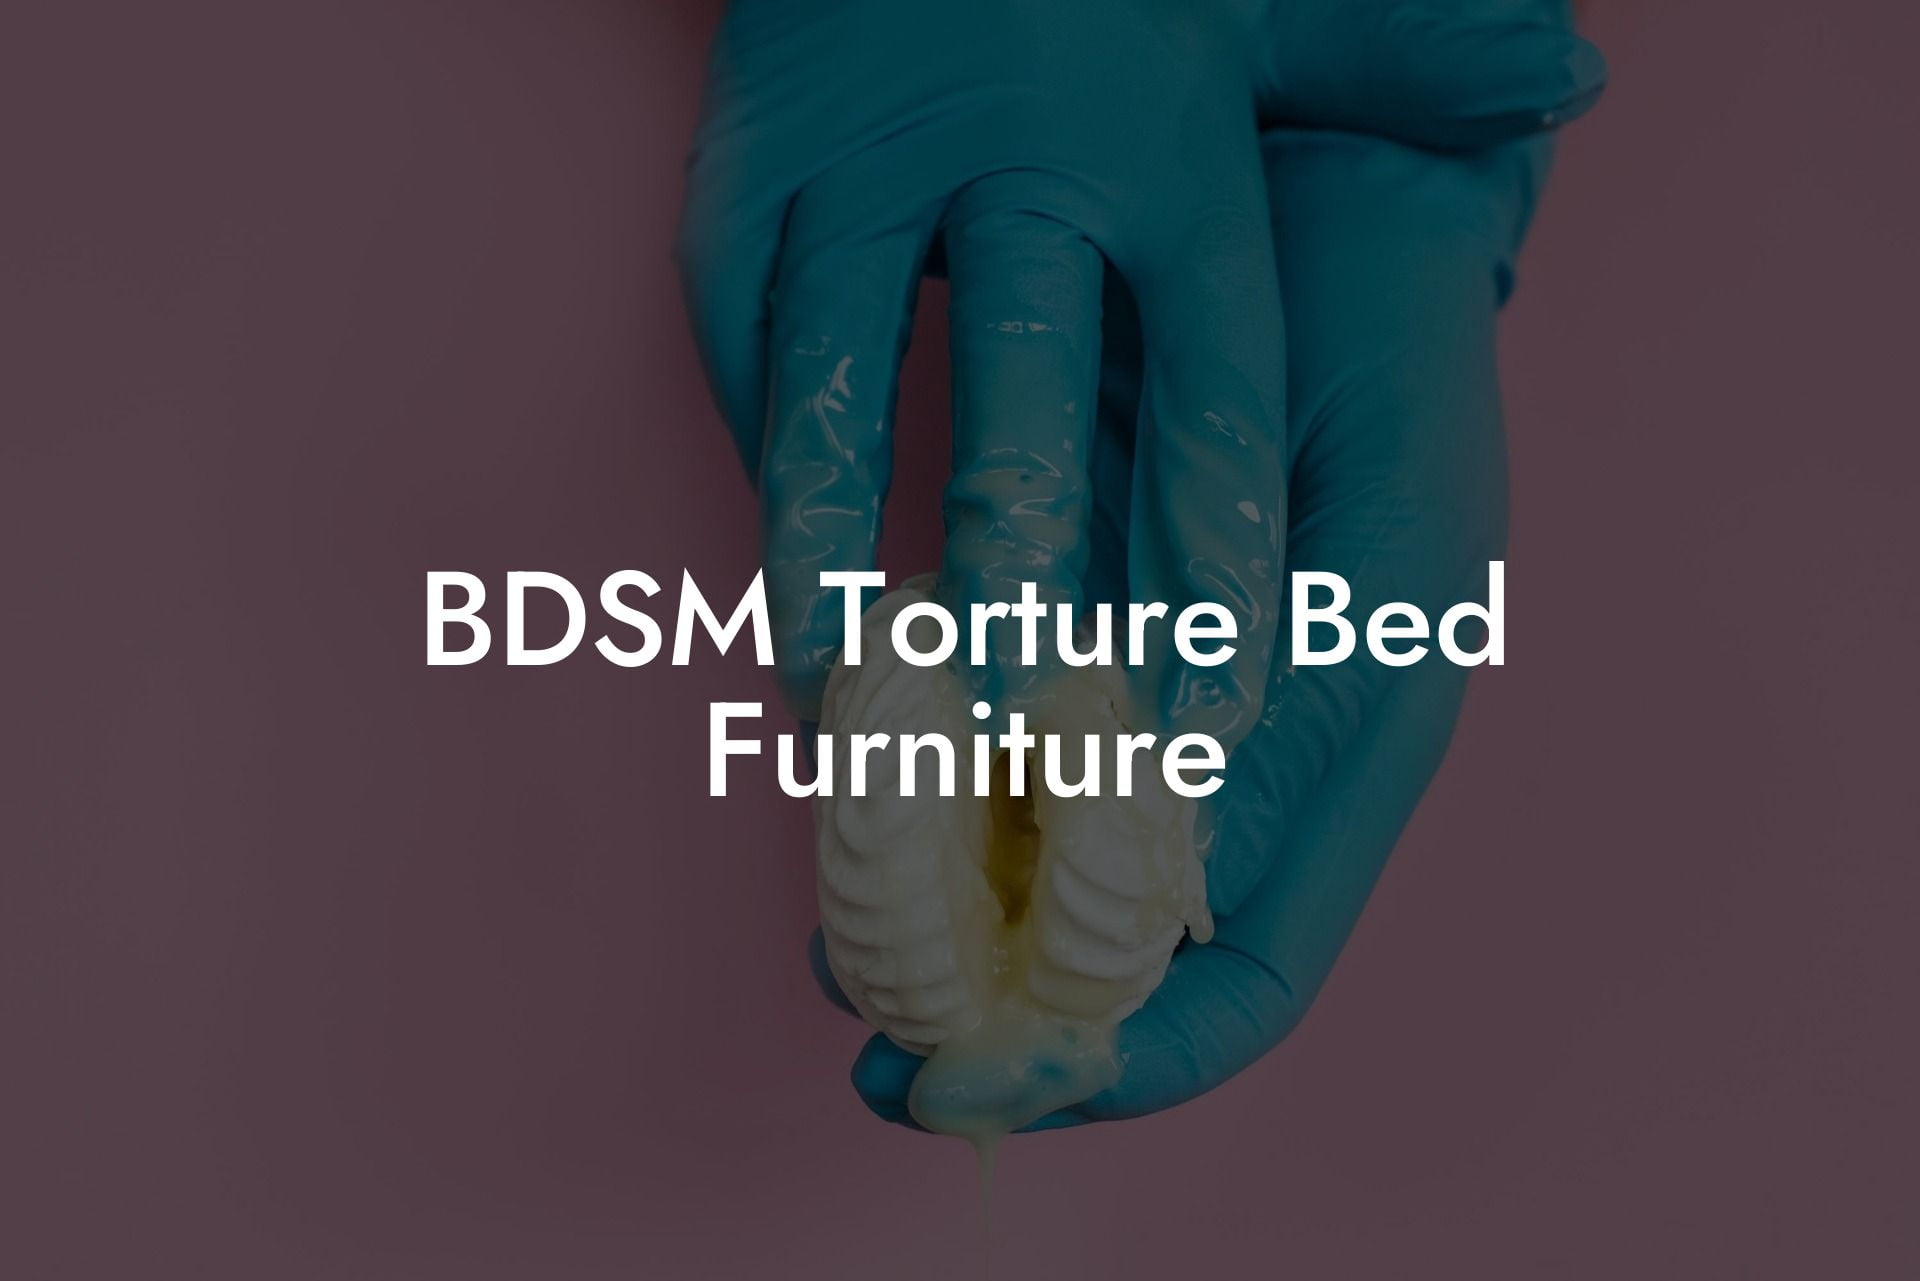 BDSM Torture Bed Furniture